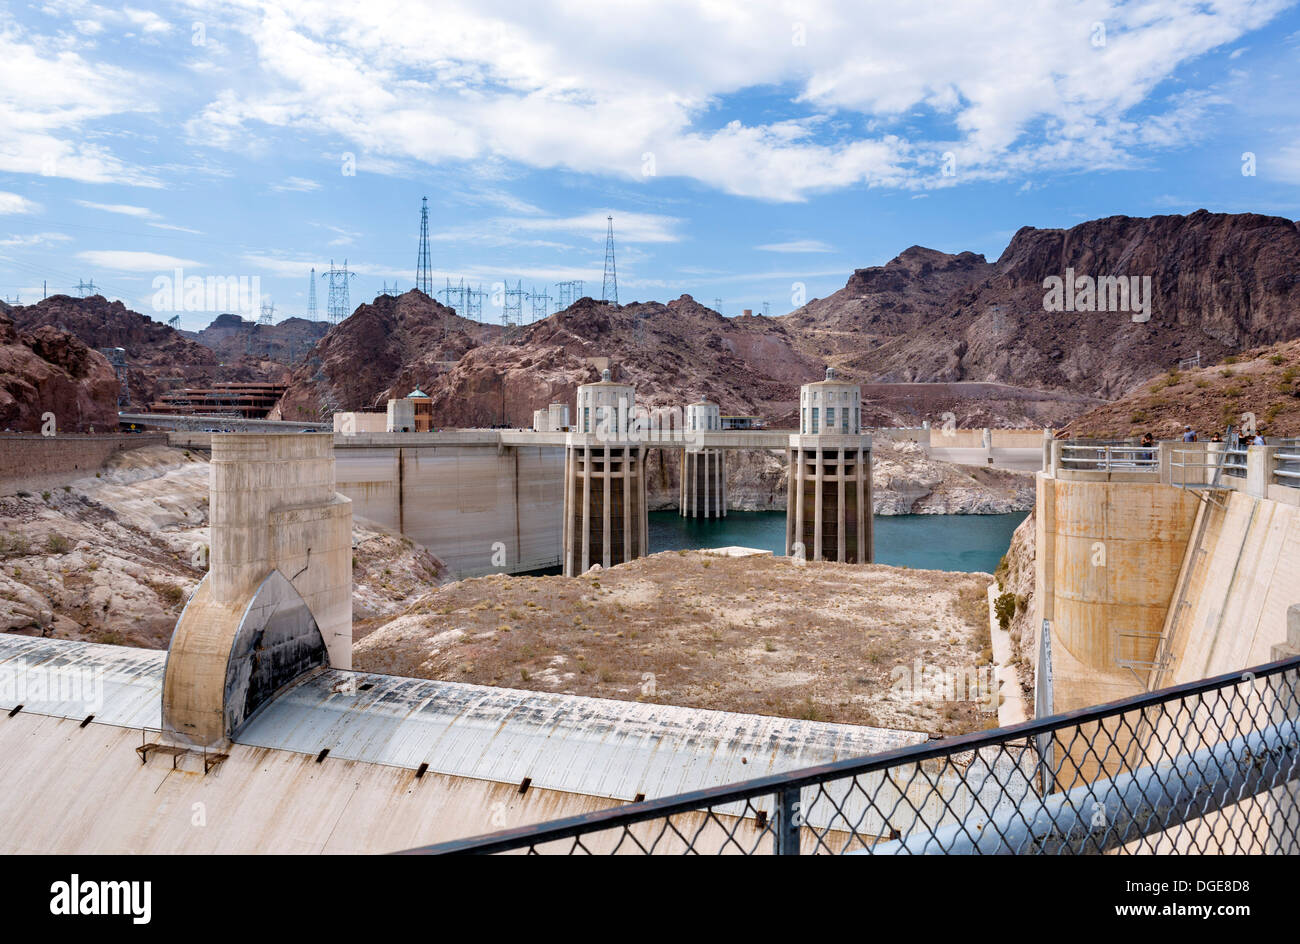 Le barrage Hoover, montrant la chute spectaculaire des niveaux d'eau au cours des dernières années, Nevada, USA Banque D'Images